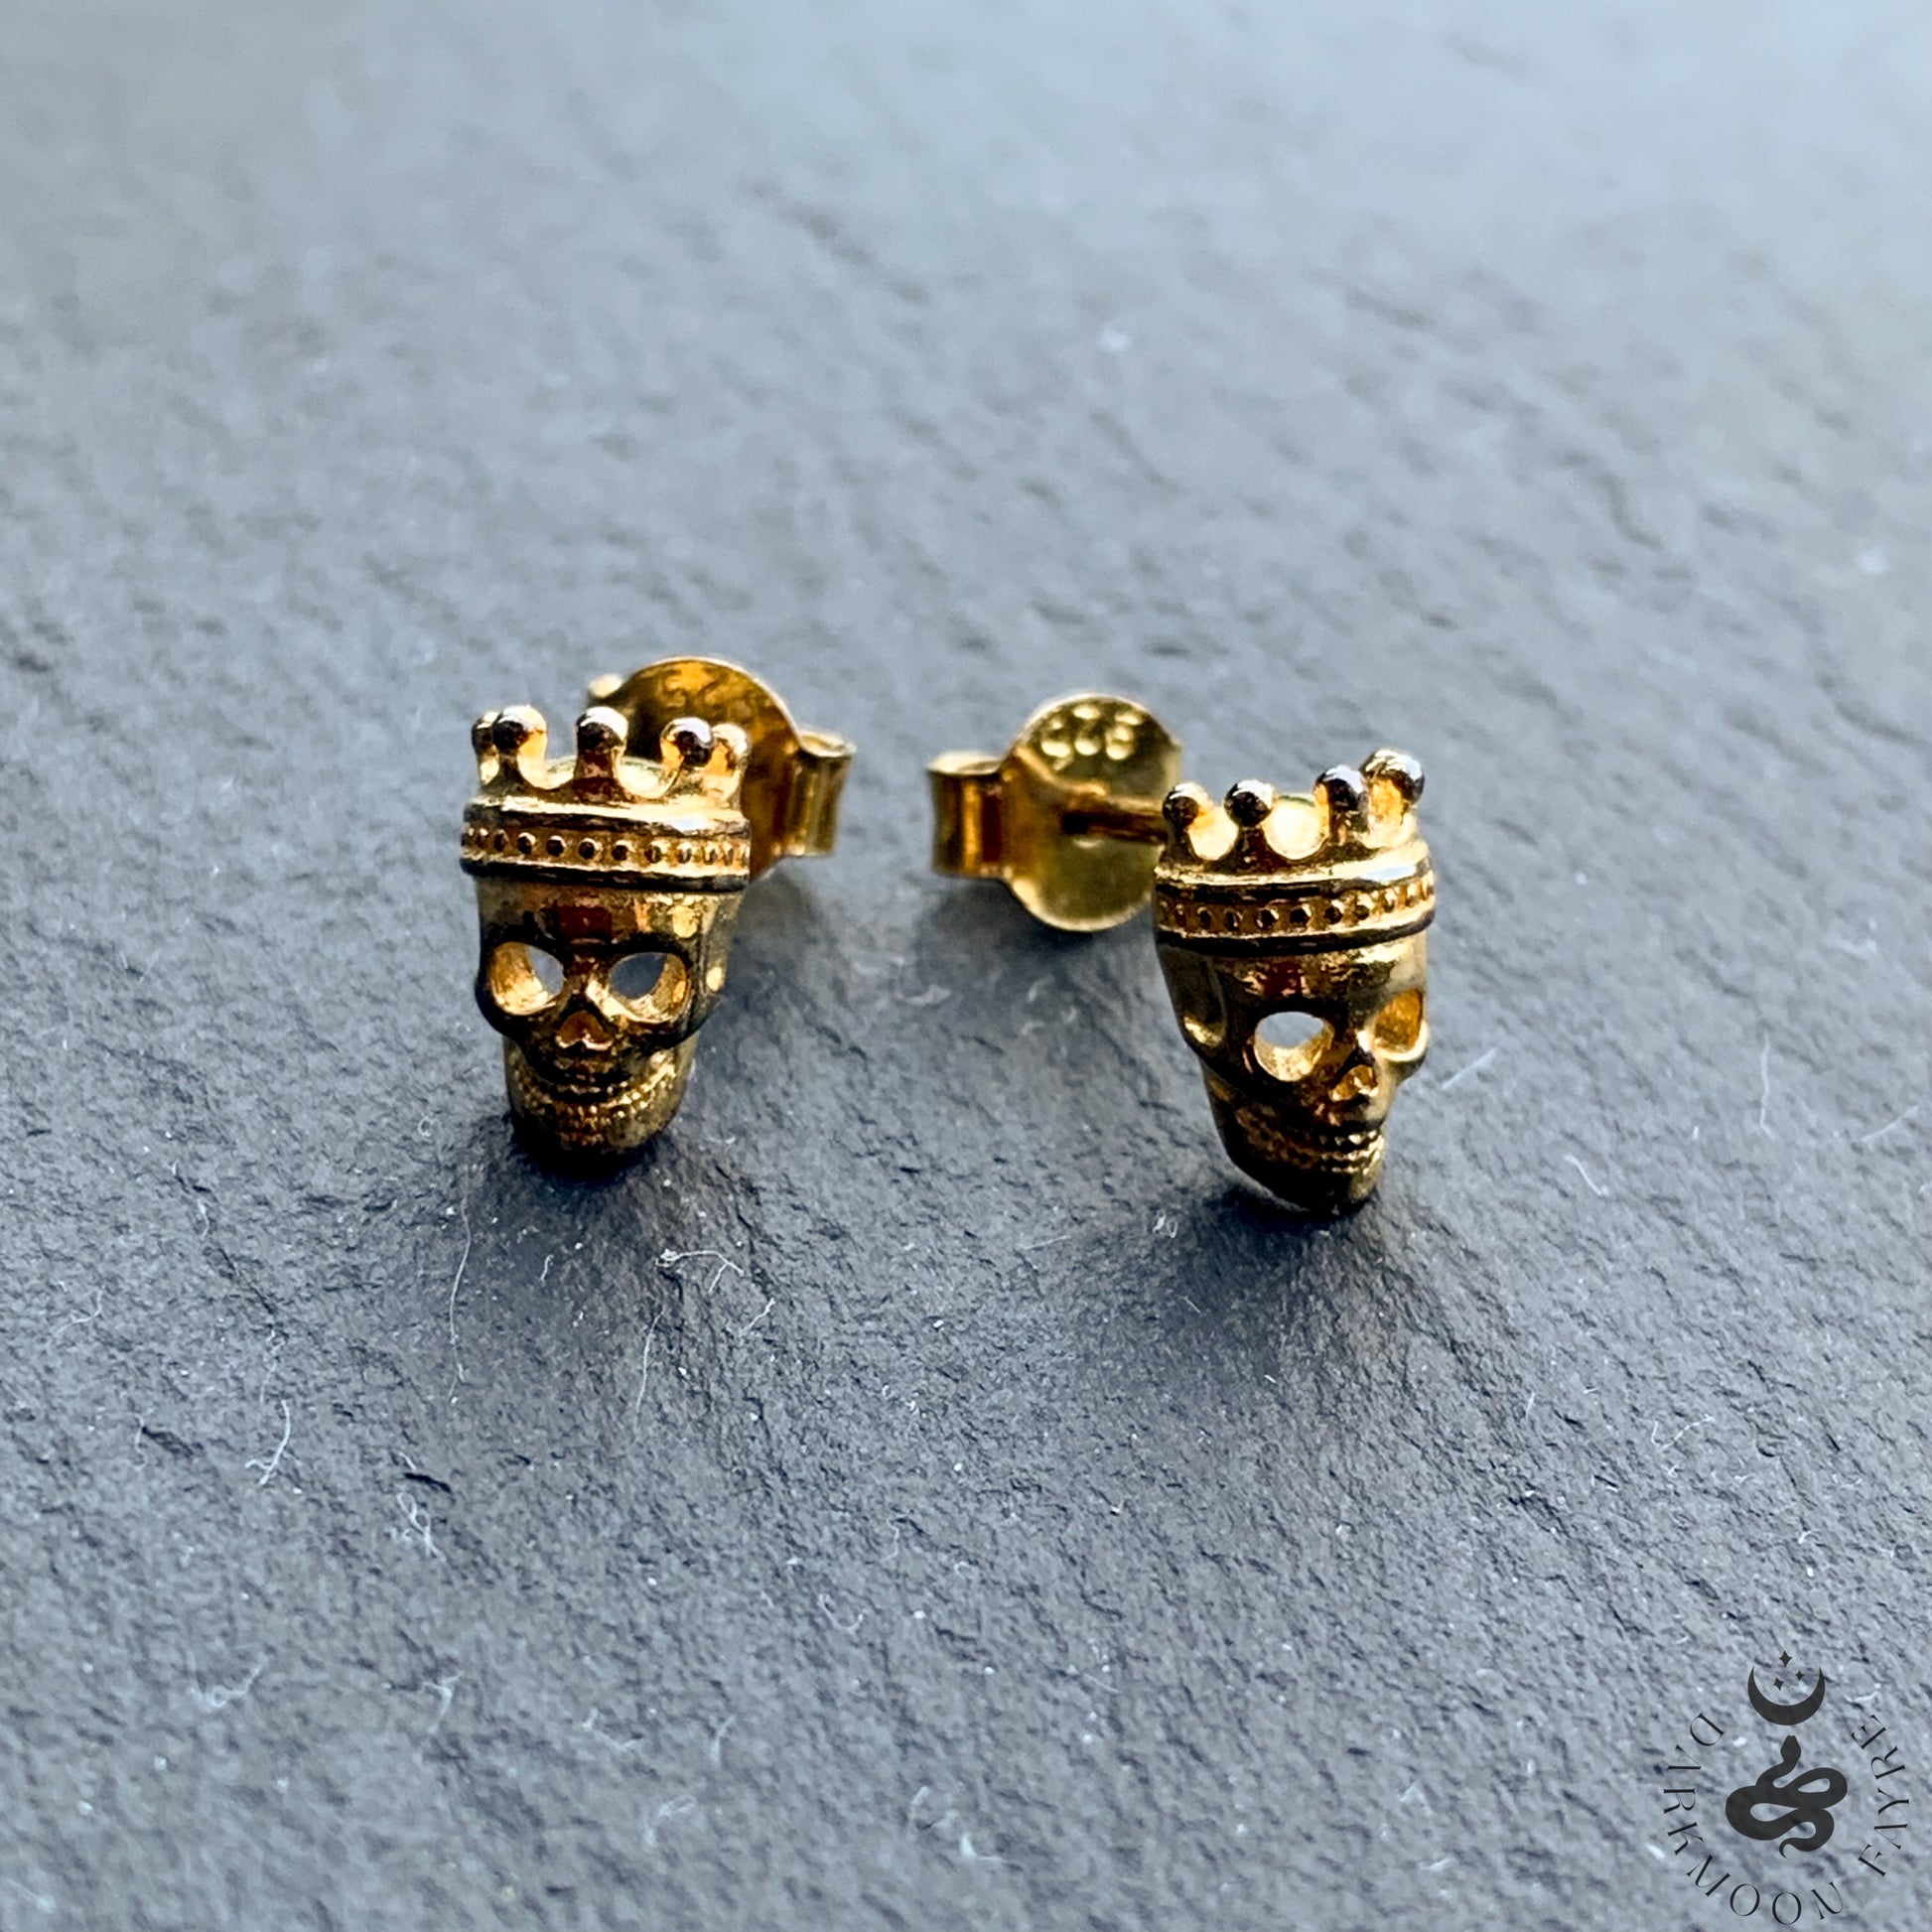 Crowned Skull Stud Earrings In 9ct Yellow Gold Vermeil - Darkmoon Fayre